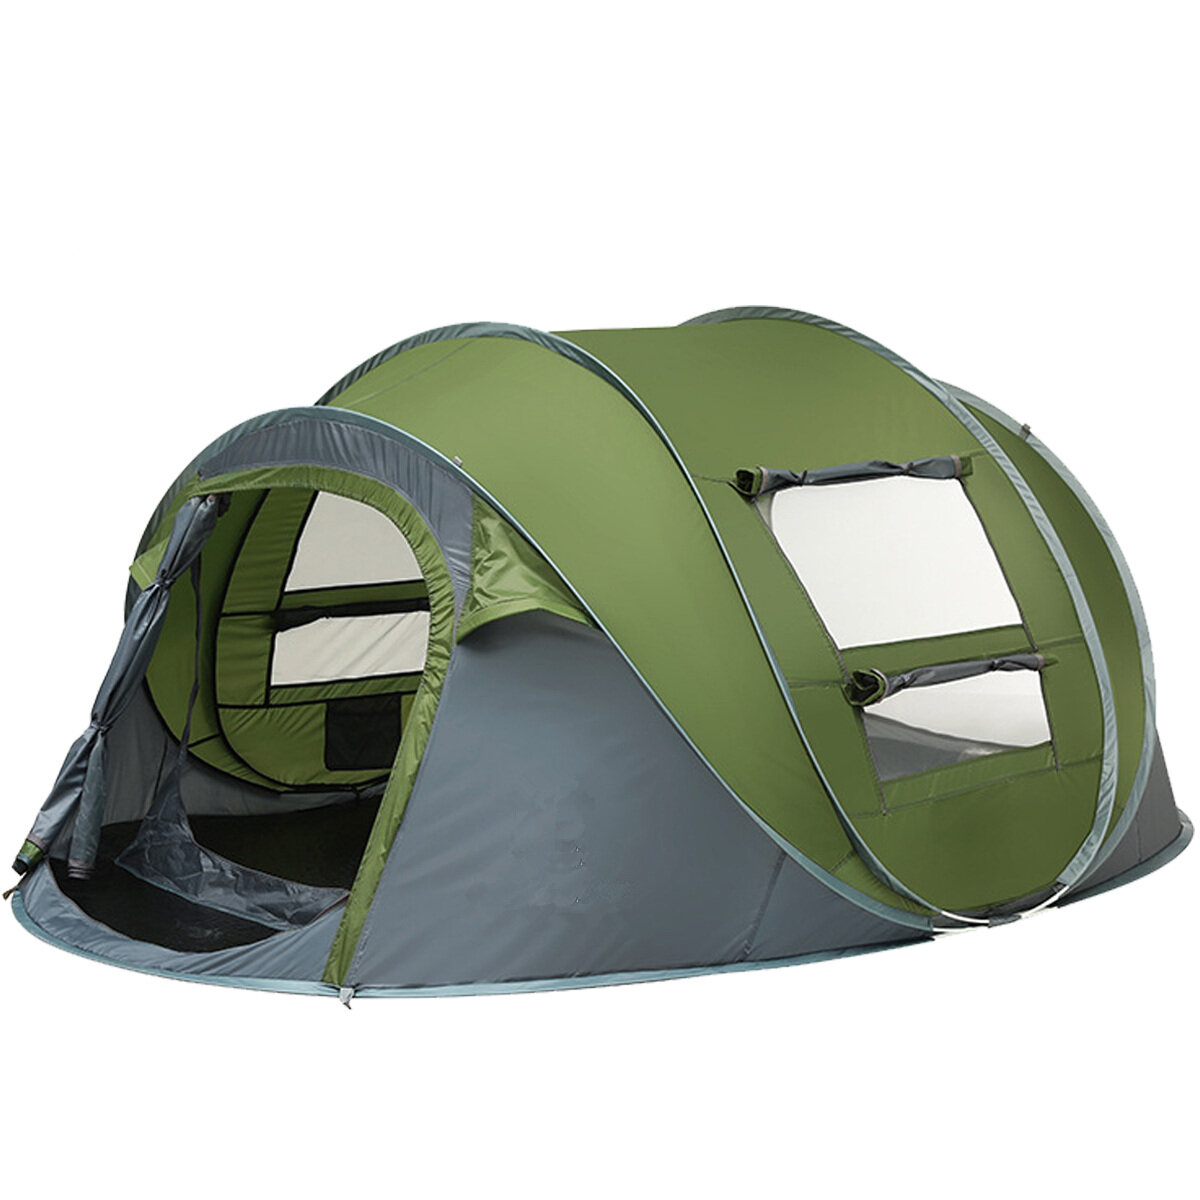 Zelt für 3-4/5-8 Personen mit Doppeltür, atmungsaktiv, automatisch, wasserdicht, mit Sonnenschutzdach für Outdoor-Aktivitäten wie Camping, Wandern oder Strand.